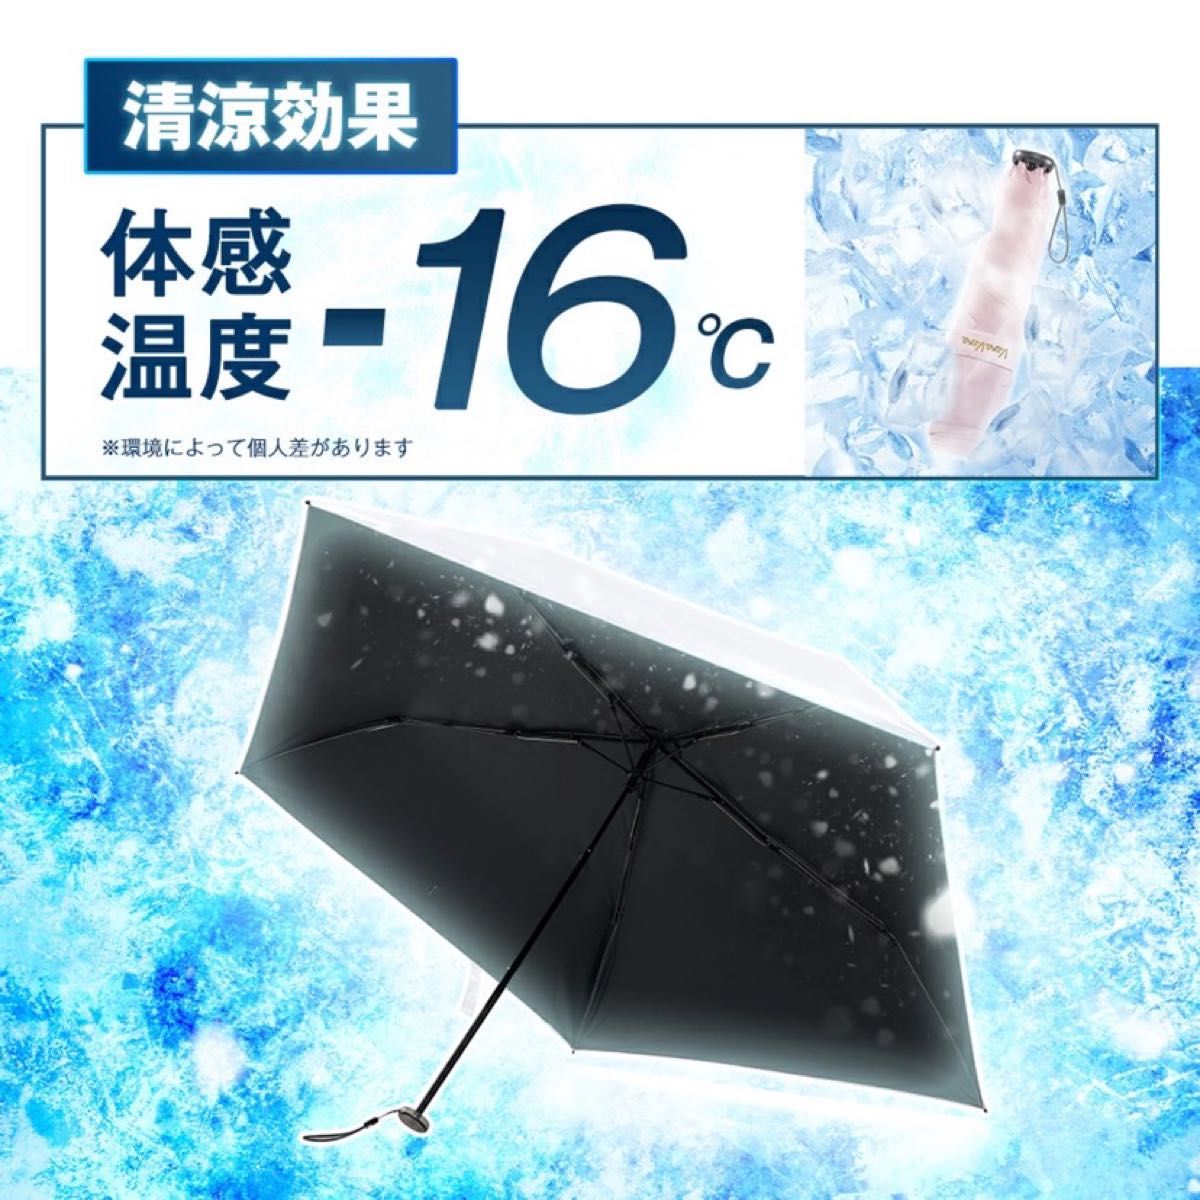 コンパクトで軽量★遮光100% 紫外線カット 新品 晴雨兼用 日傘 折りたたみ傘 完全遮光 100% UVカット 超軽量